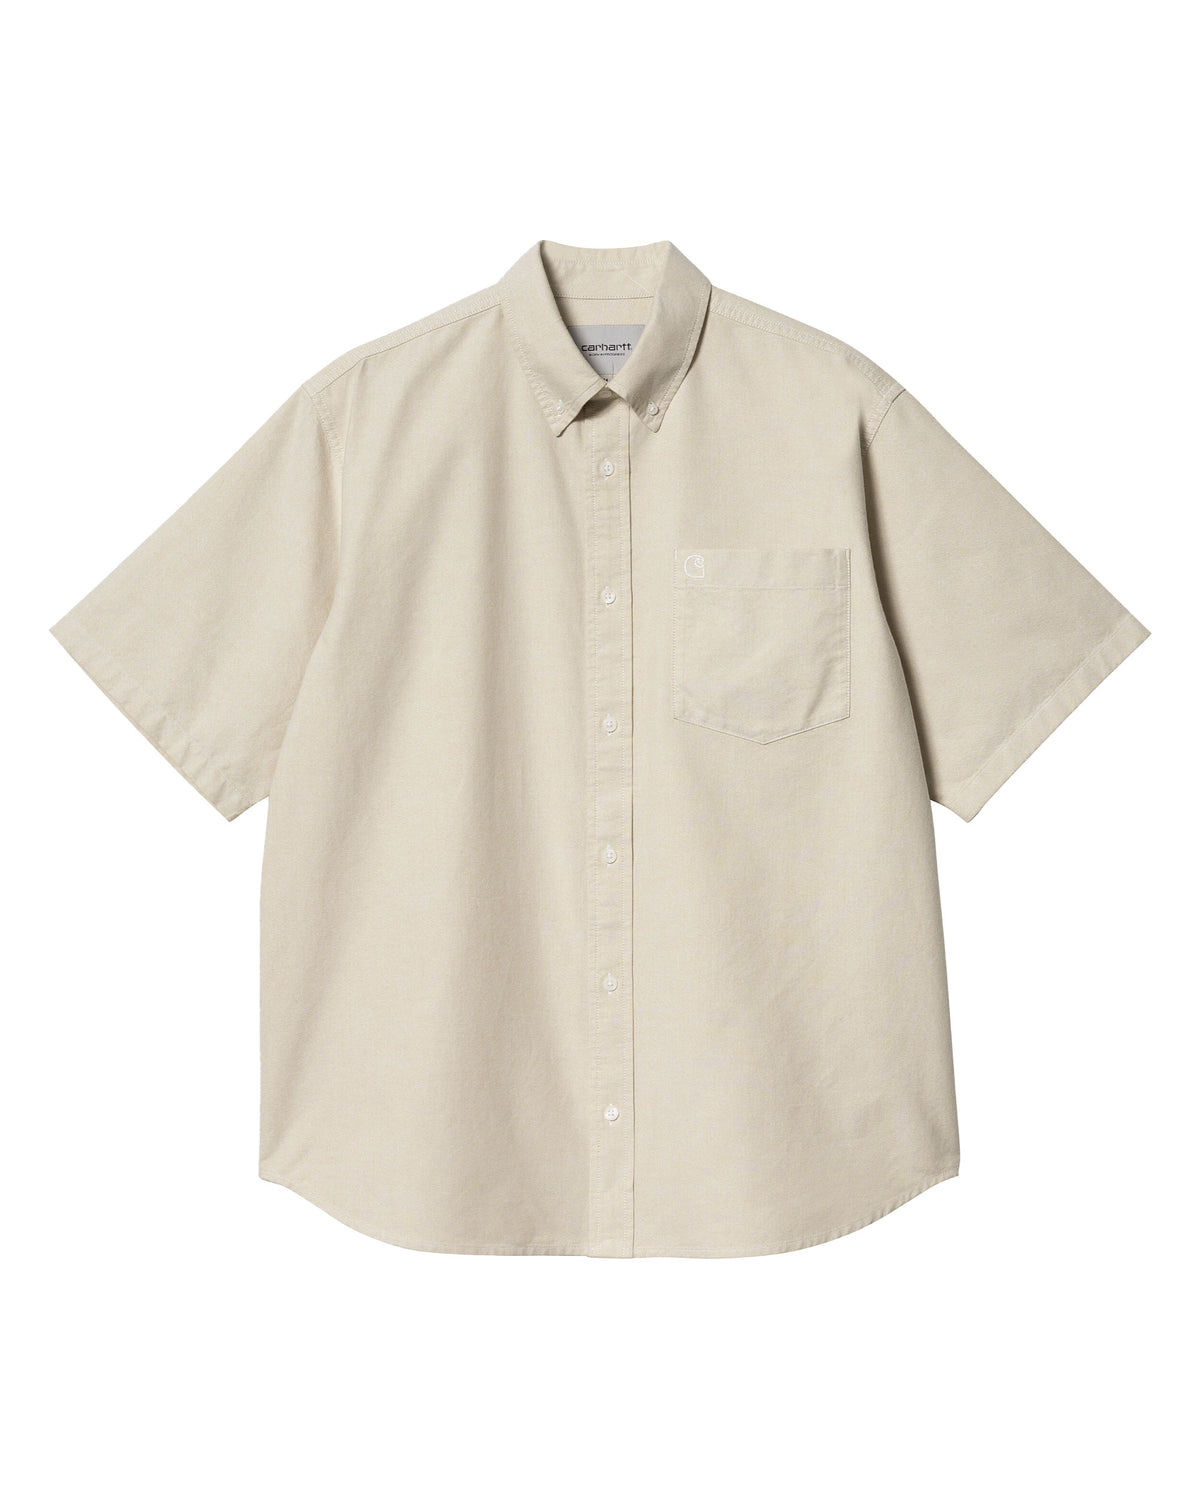 Carhartt Wip Braxton Shirt Agate-Wax